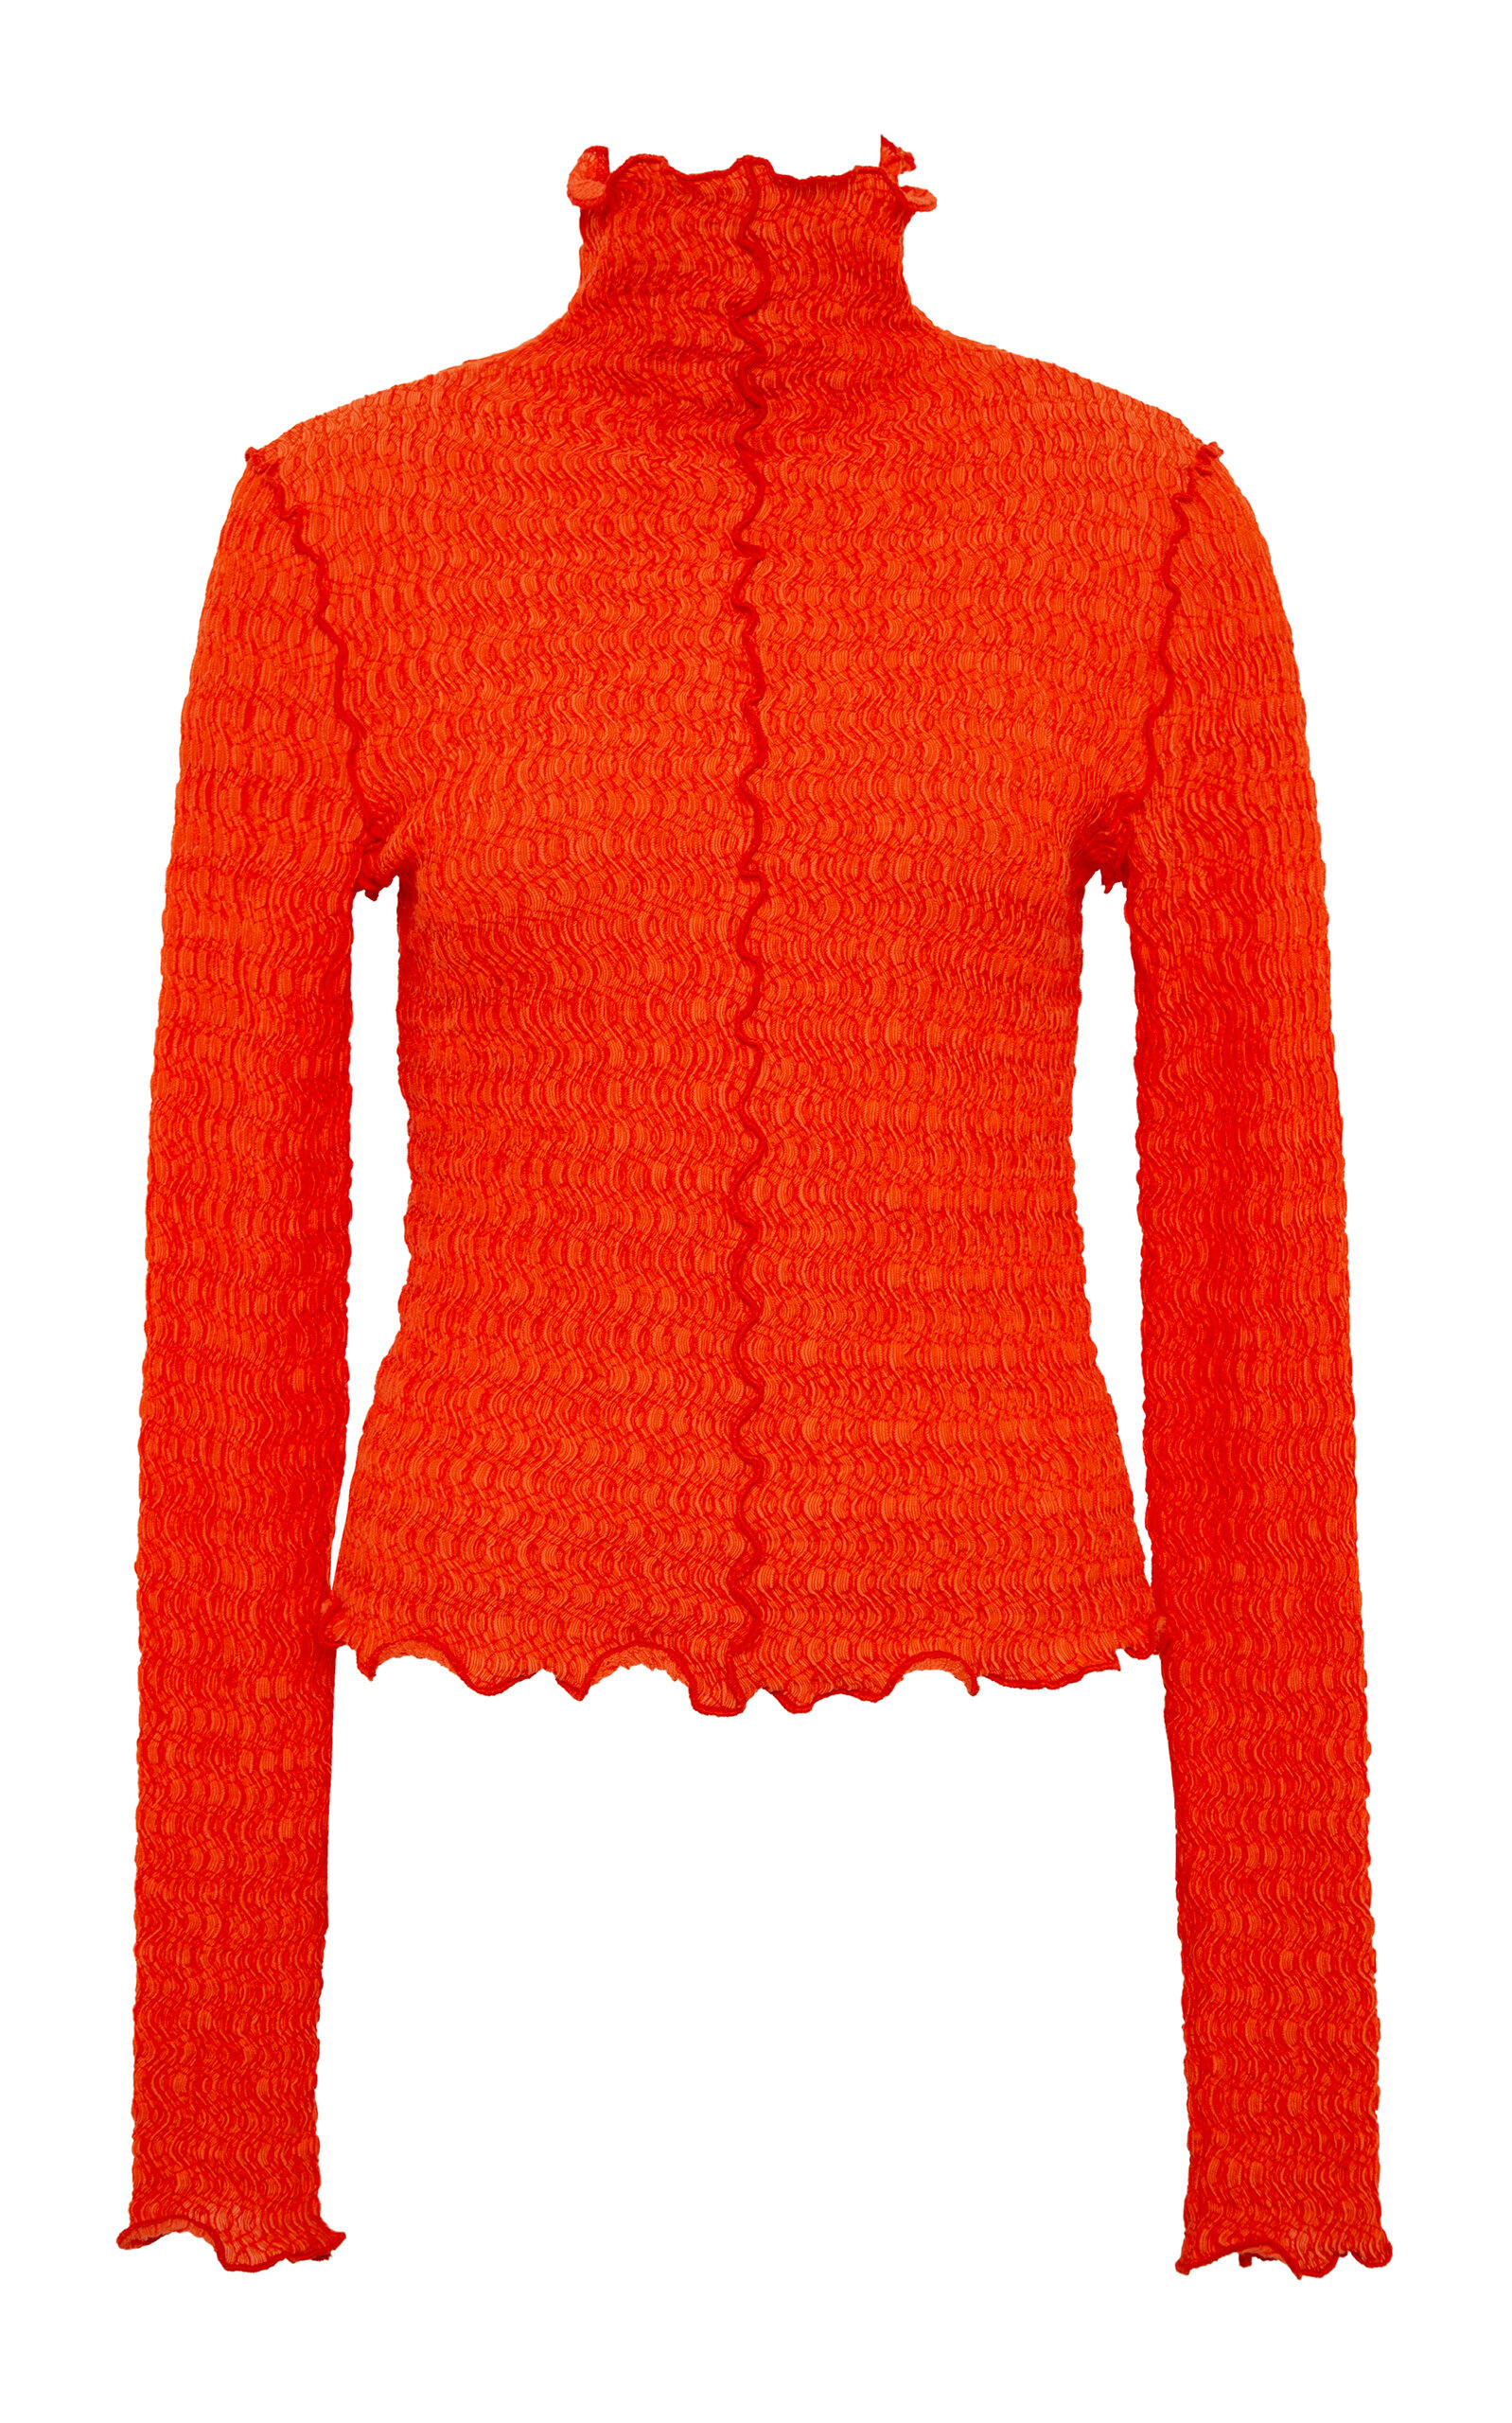 Siedres Nira Textured Cotton-blend Top In Orange